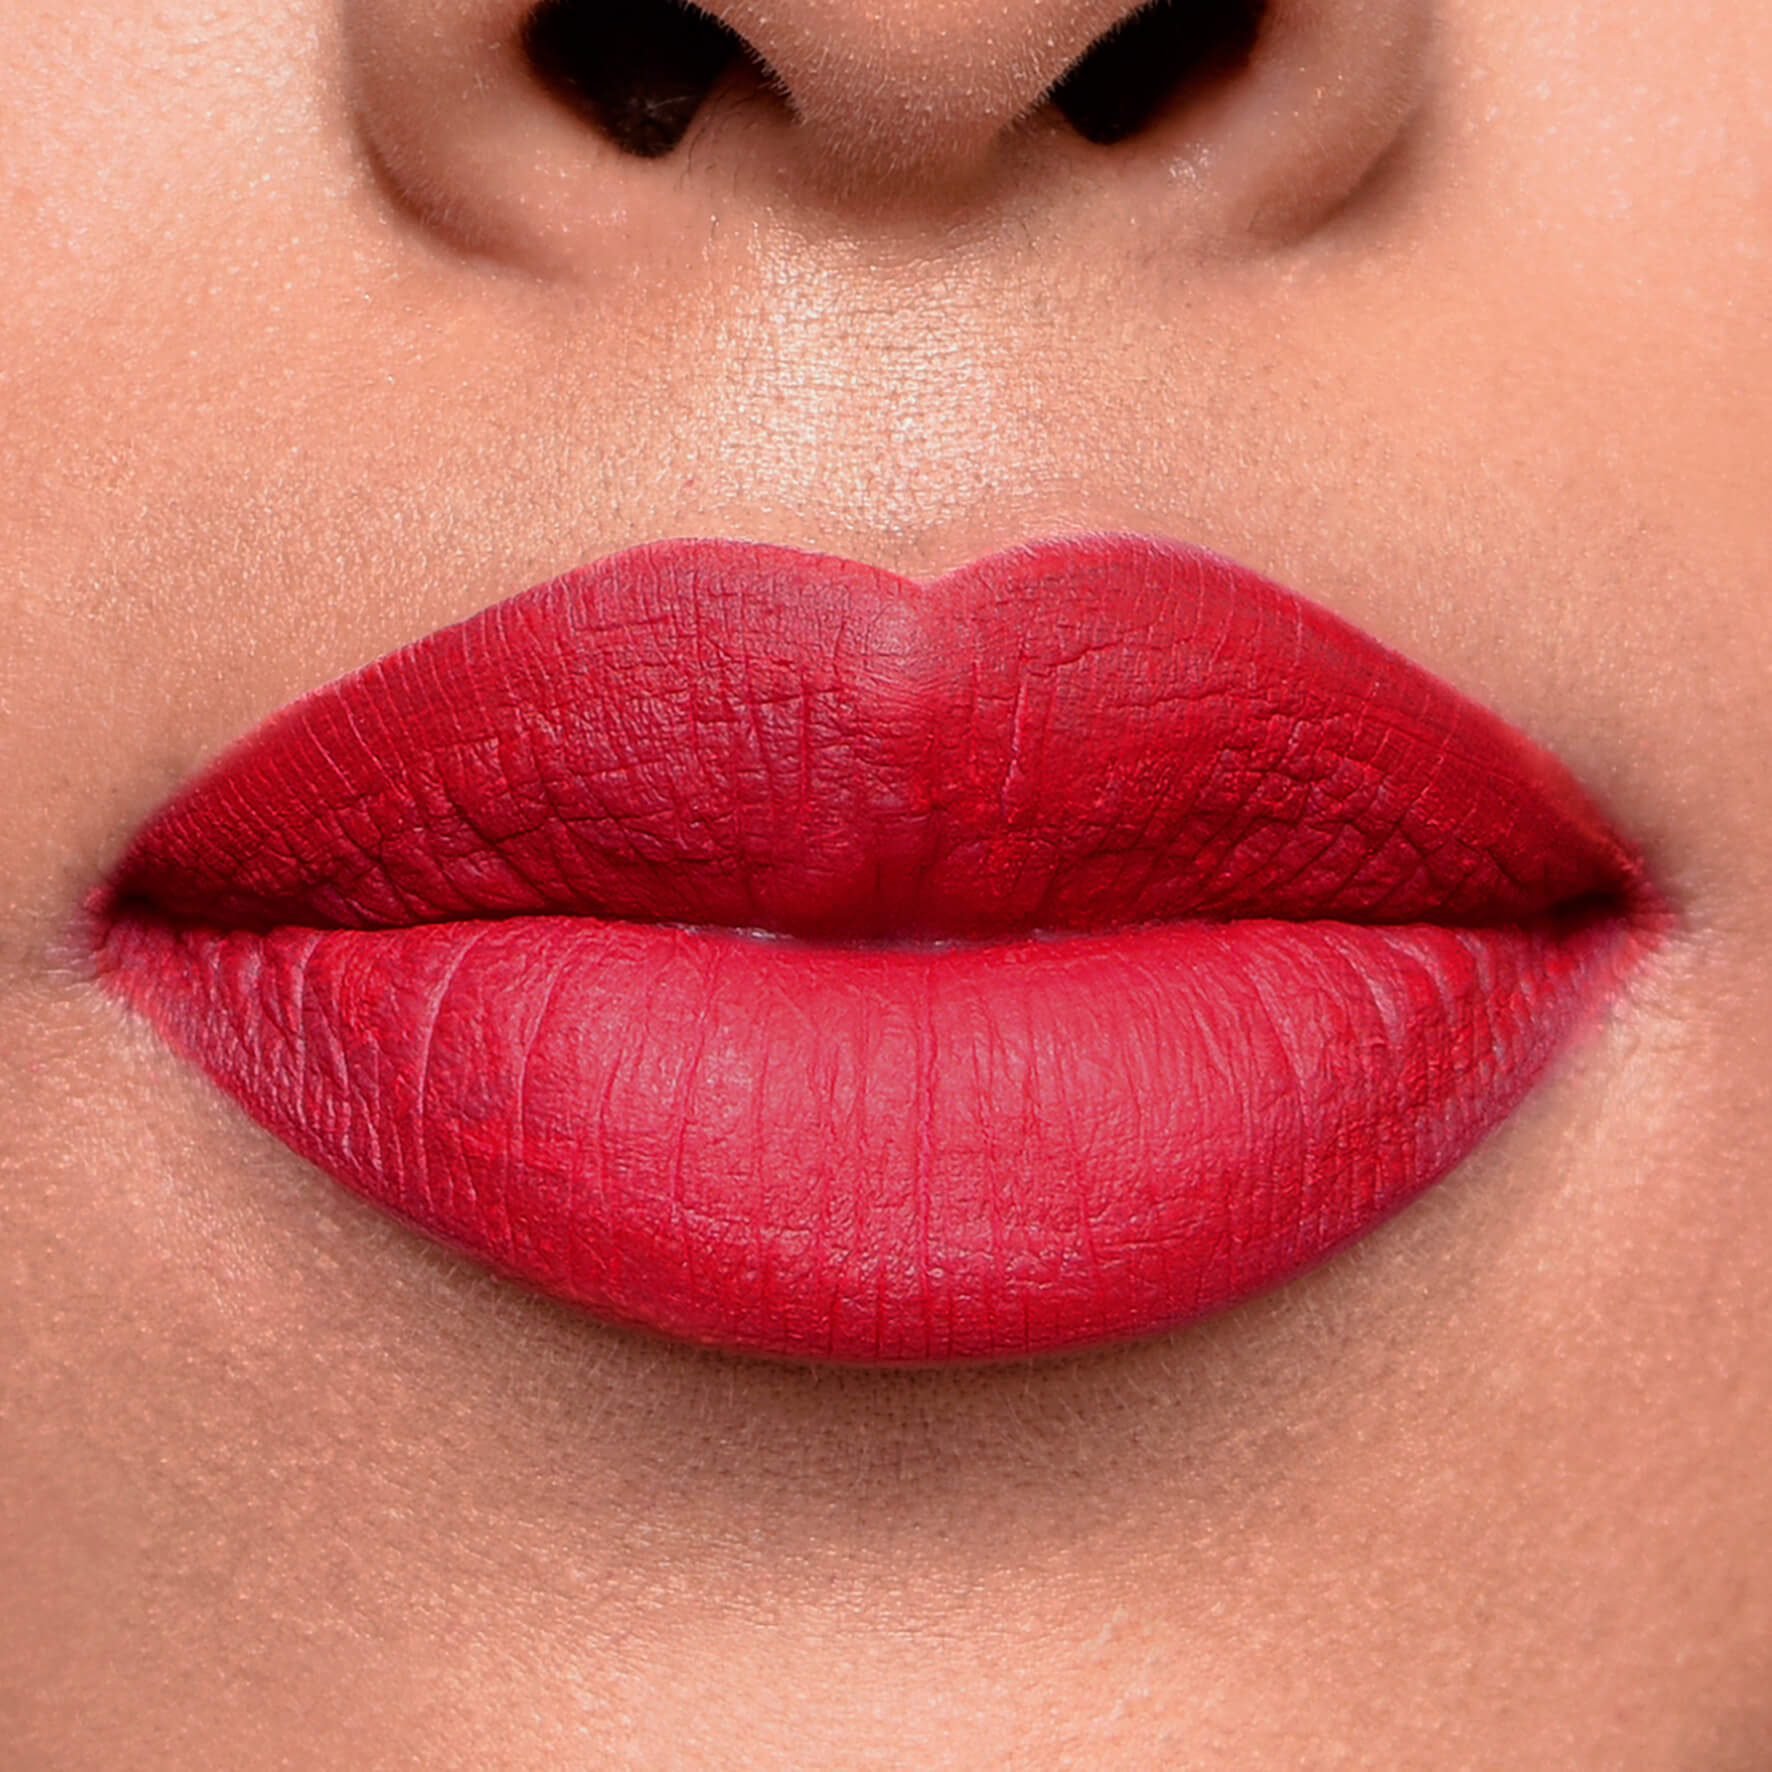 RED LILY Matte Intense Lip Color - ARANZA COSMETICS - Compra Maquillaje y Artículos de Belleza | Belle Queen Cosmetics